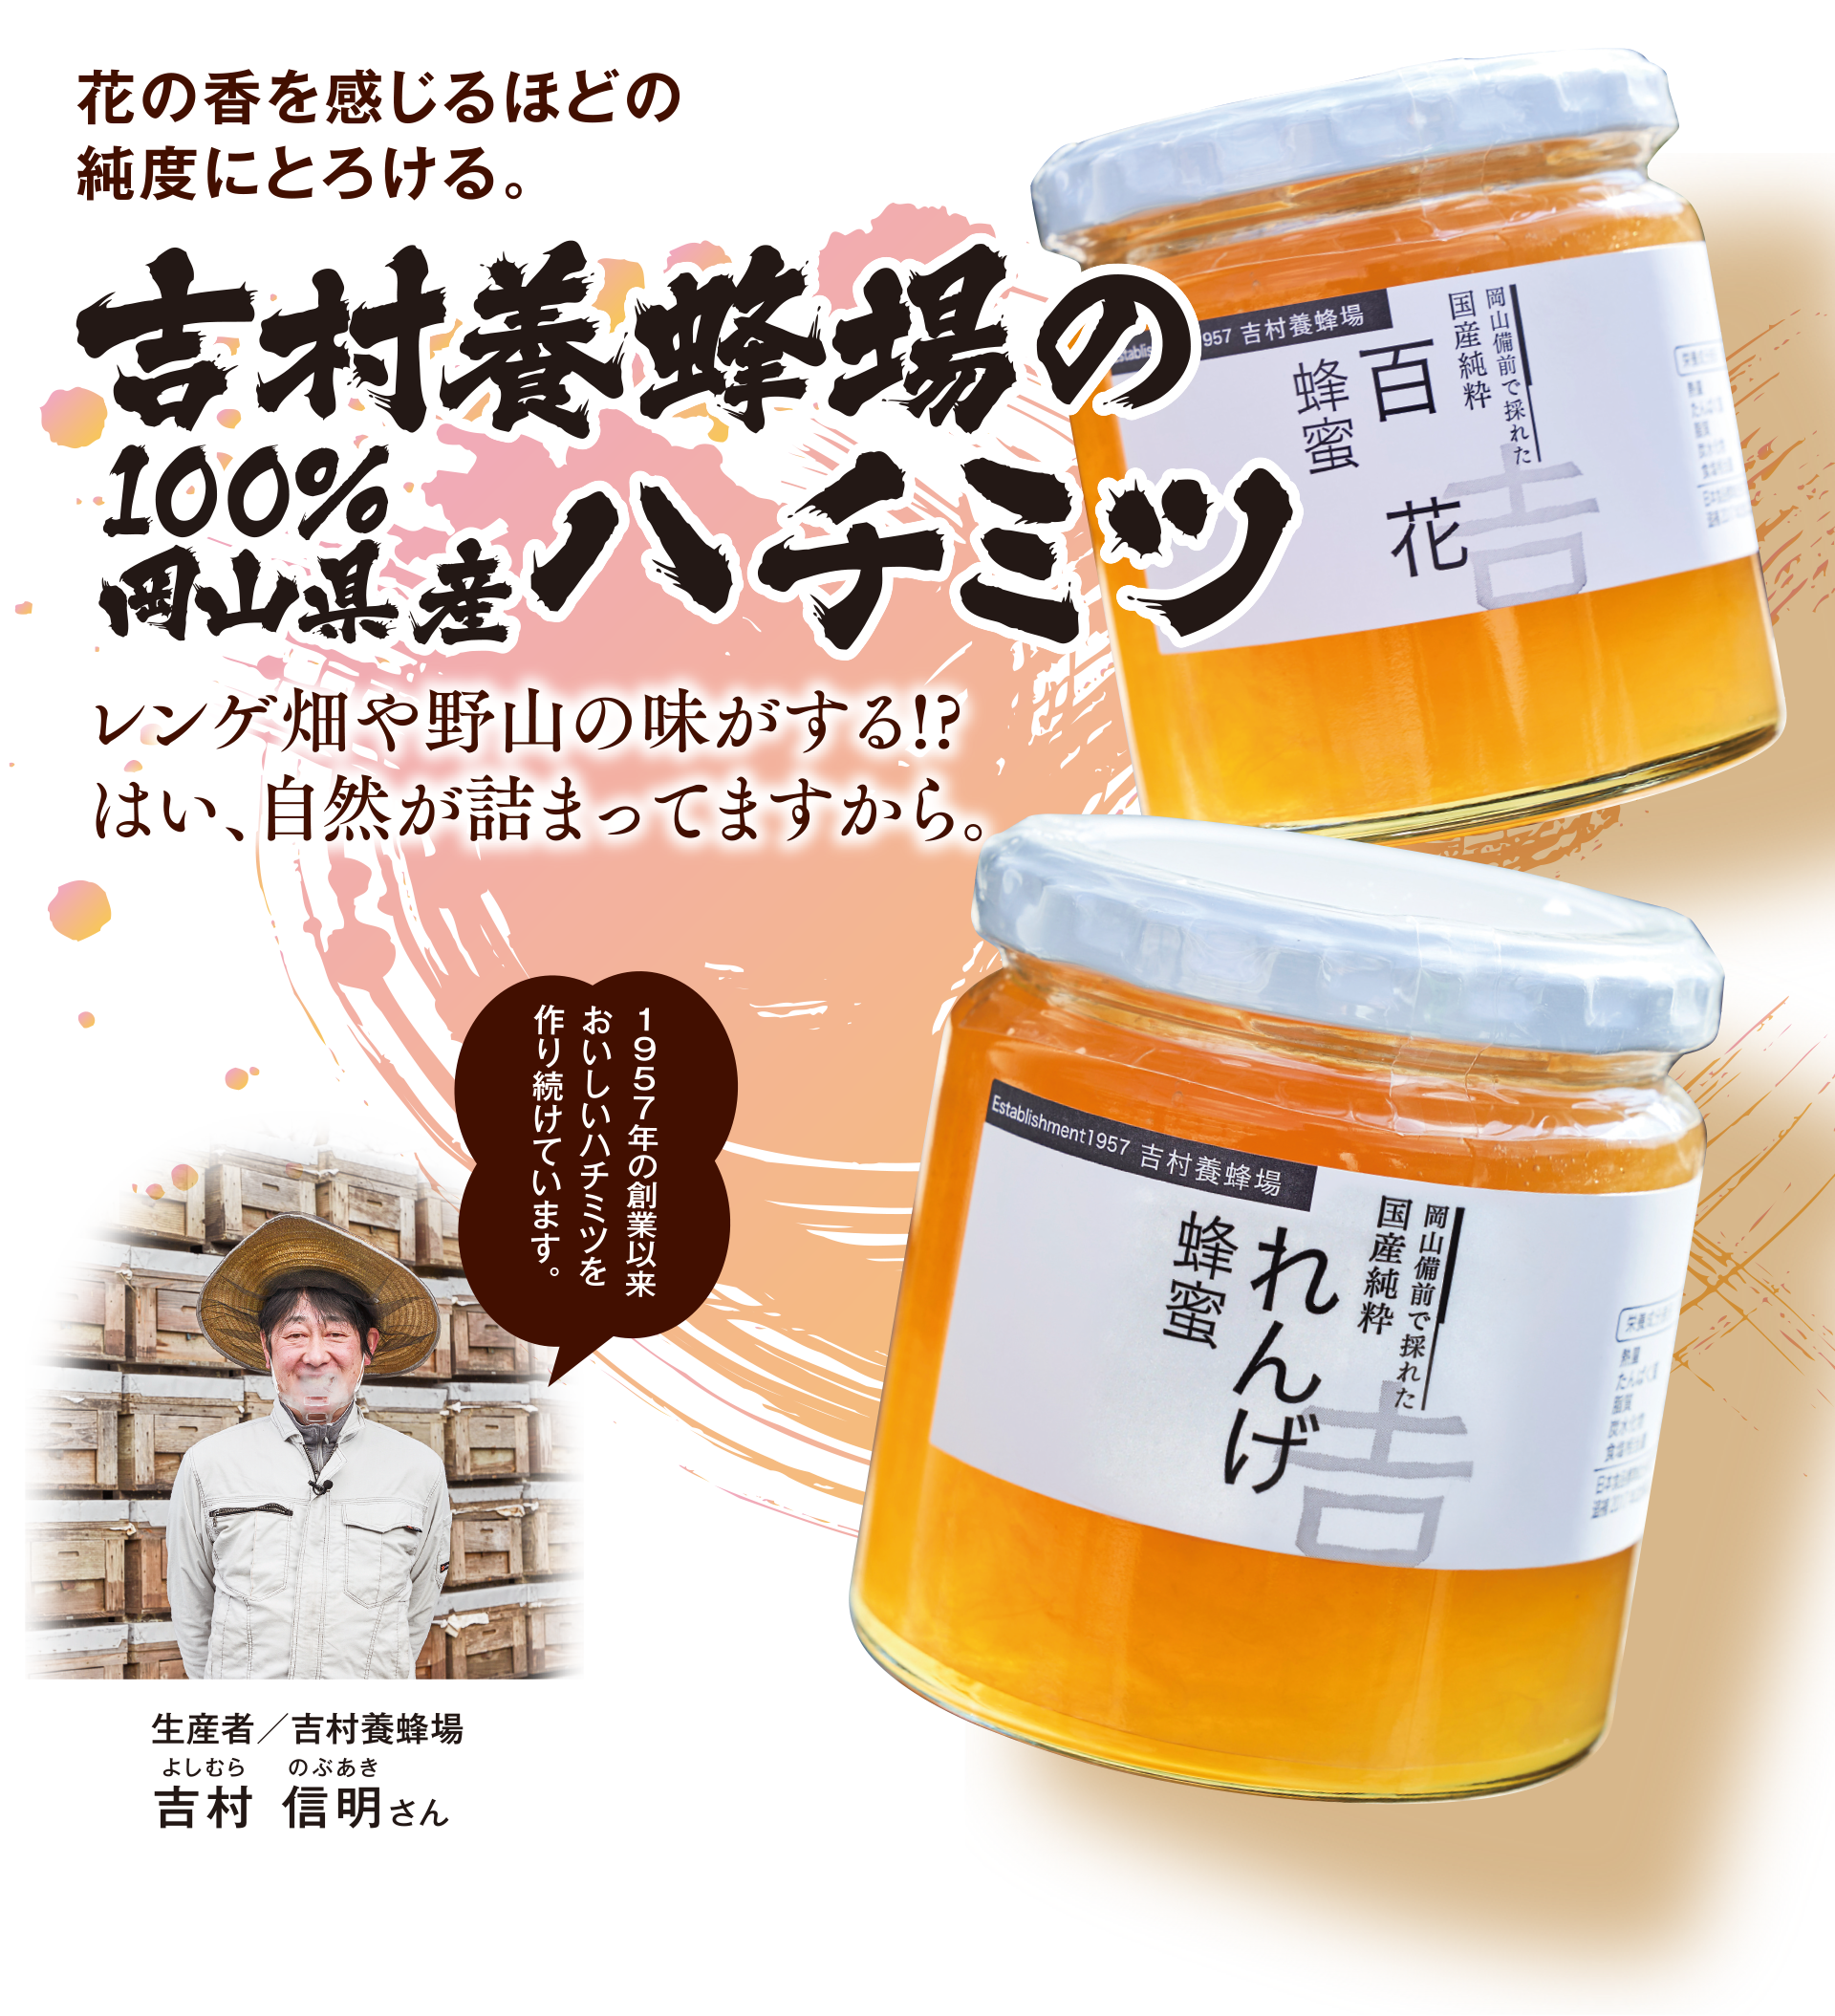 吉村養蜂場の100%岡山県産ハチミツ